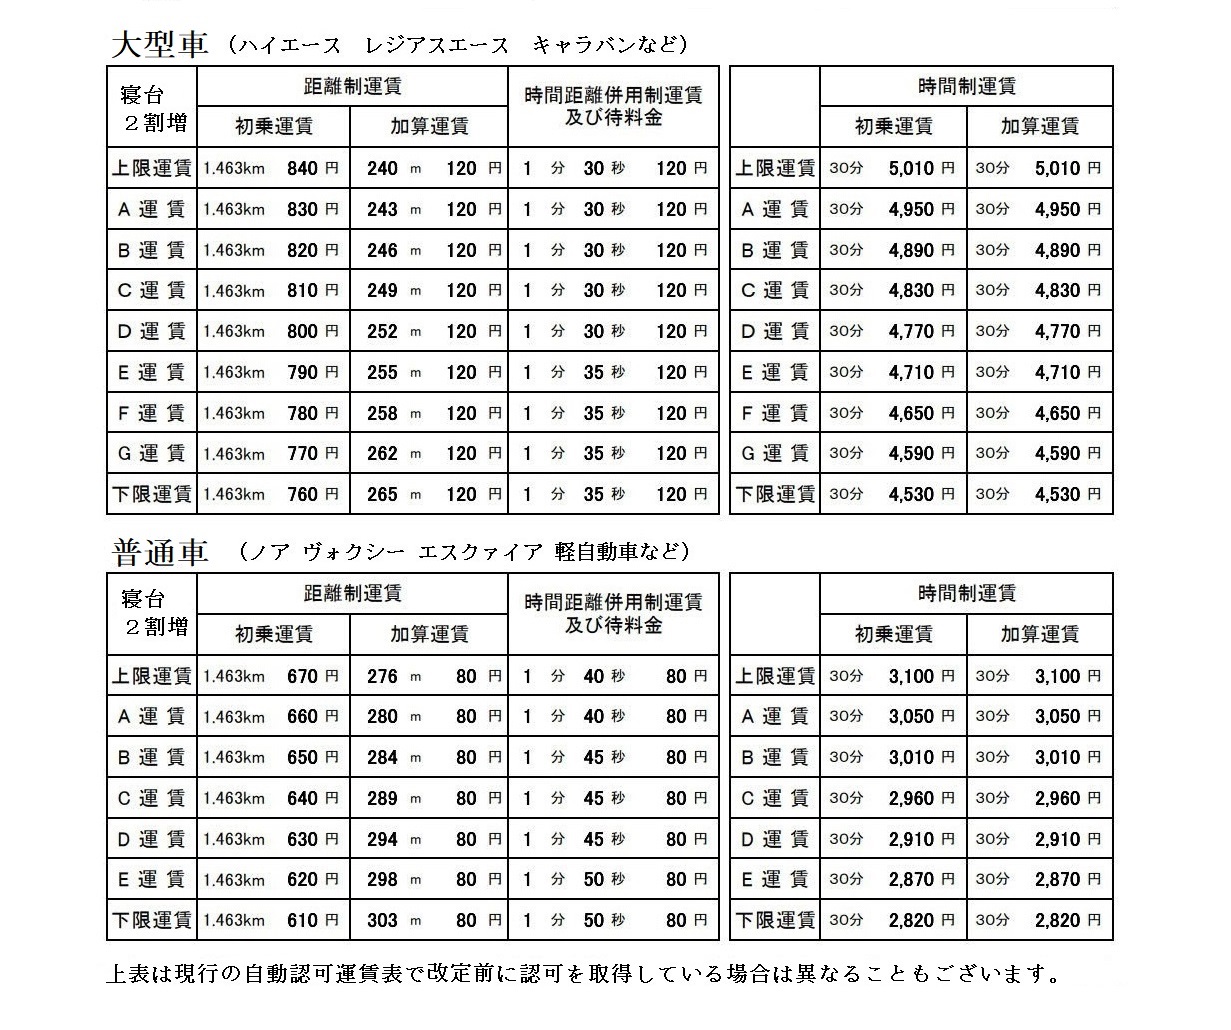 自動認可運賃・料金表(札幌A地区)